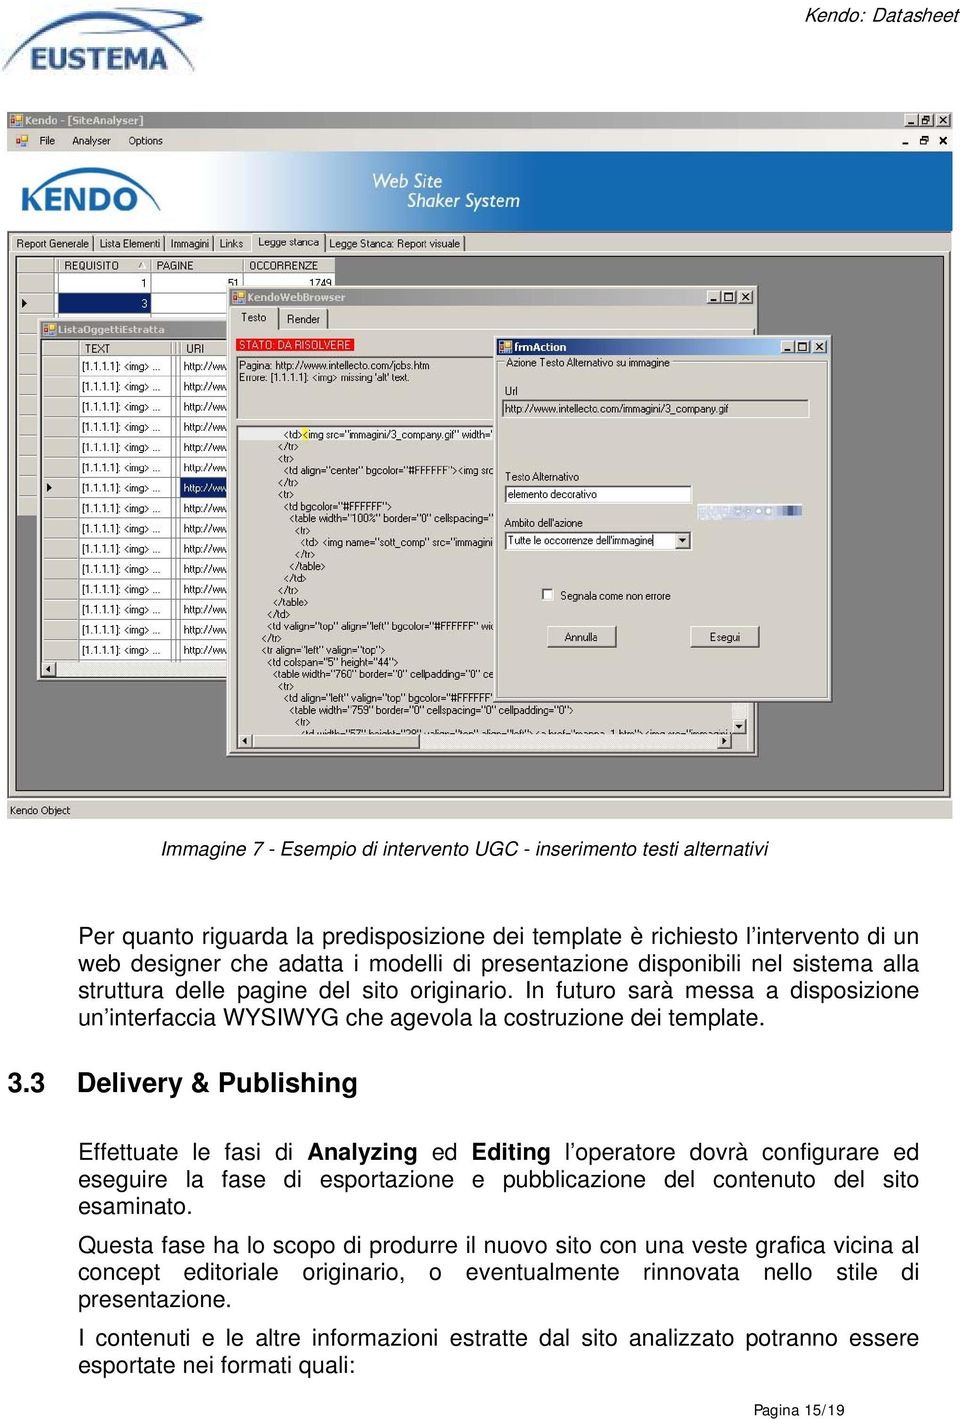 3 Delivery & Publishing Effettuate le fasi di Analyzing ed Editing l operatore dovrà configurare ed eseguire la fase di esportazione e pubblicazione del contenuto del sito esaminato.